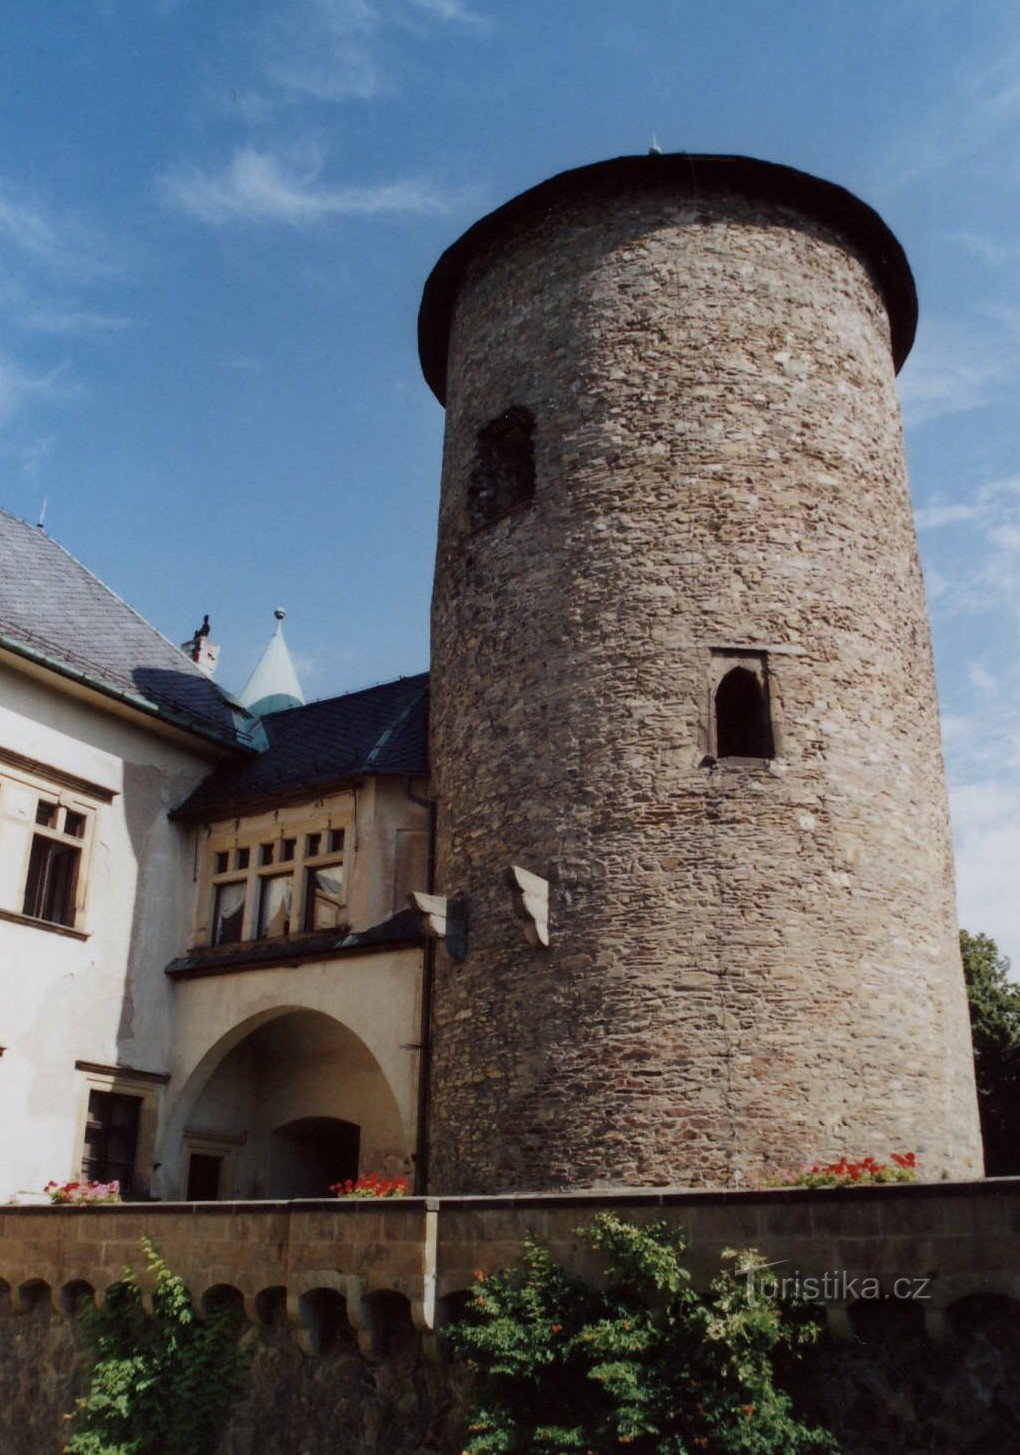 voz de castillo de mediados del siglo XIII.